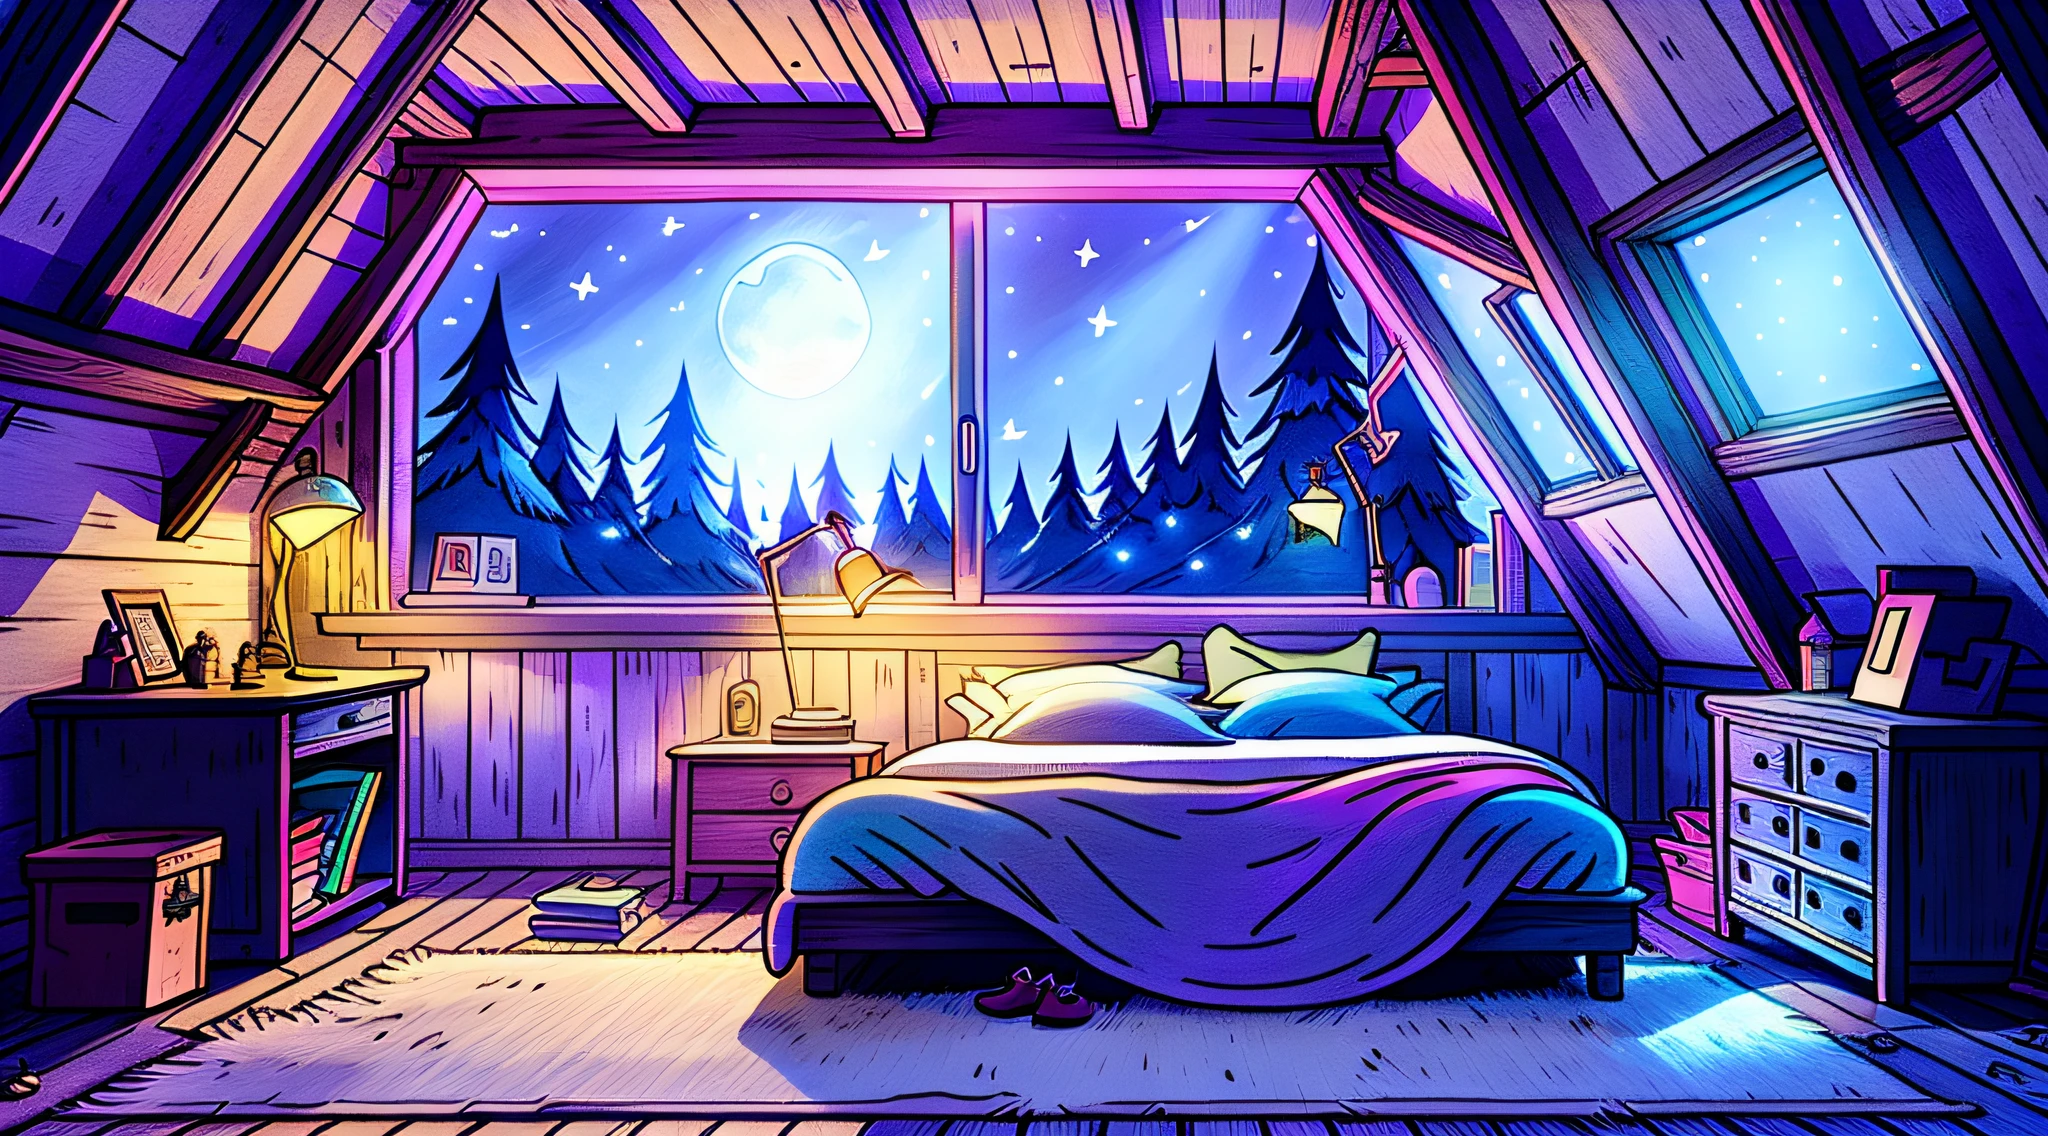 уютная спальня ночью, лунный свет светит в окно, подробная иллюстрация, мультфильм, в стиле гравитифолз,